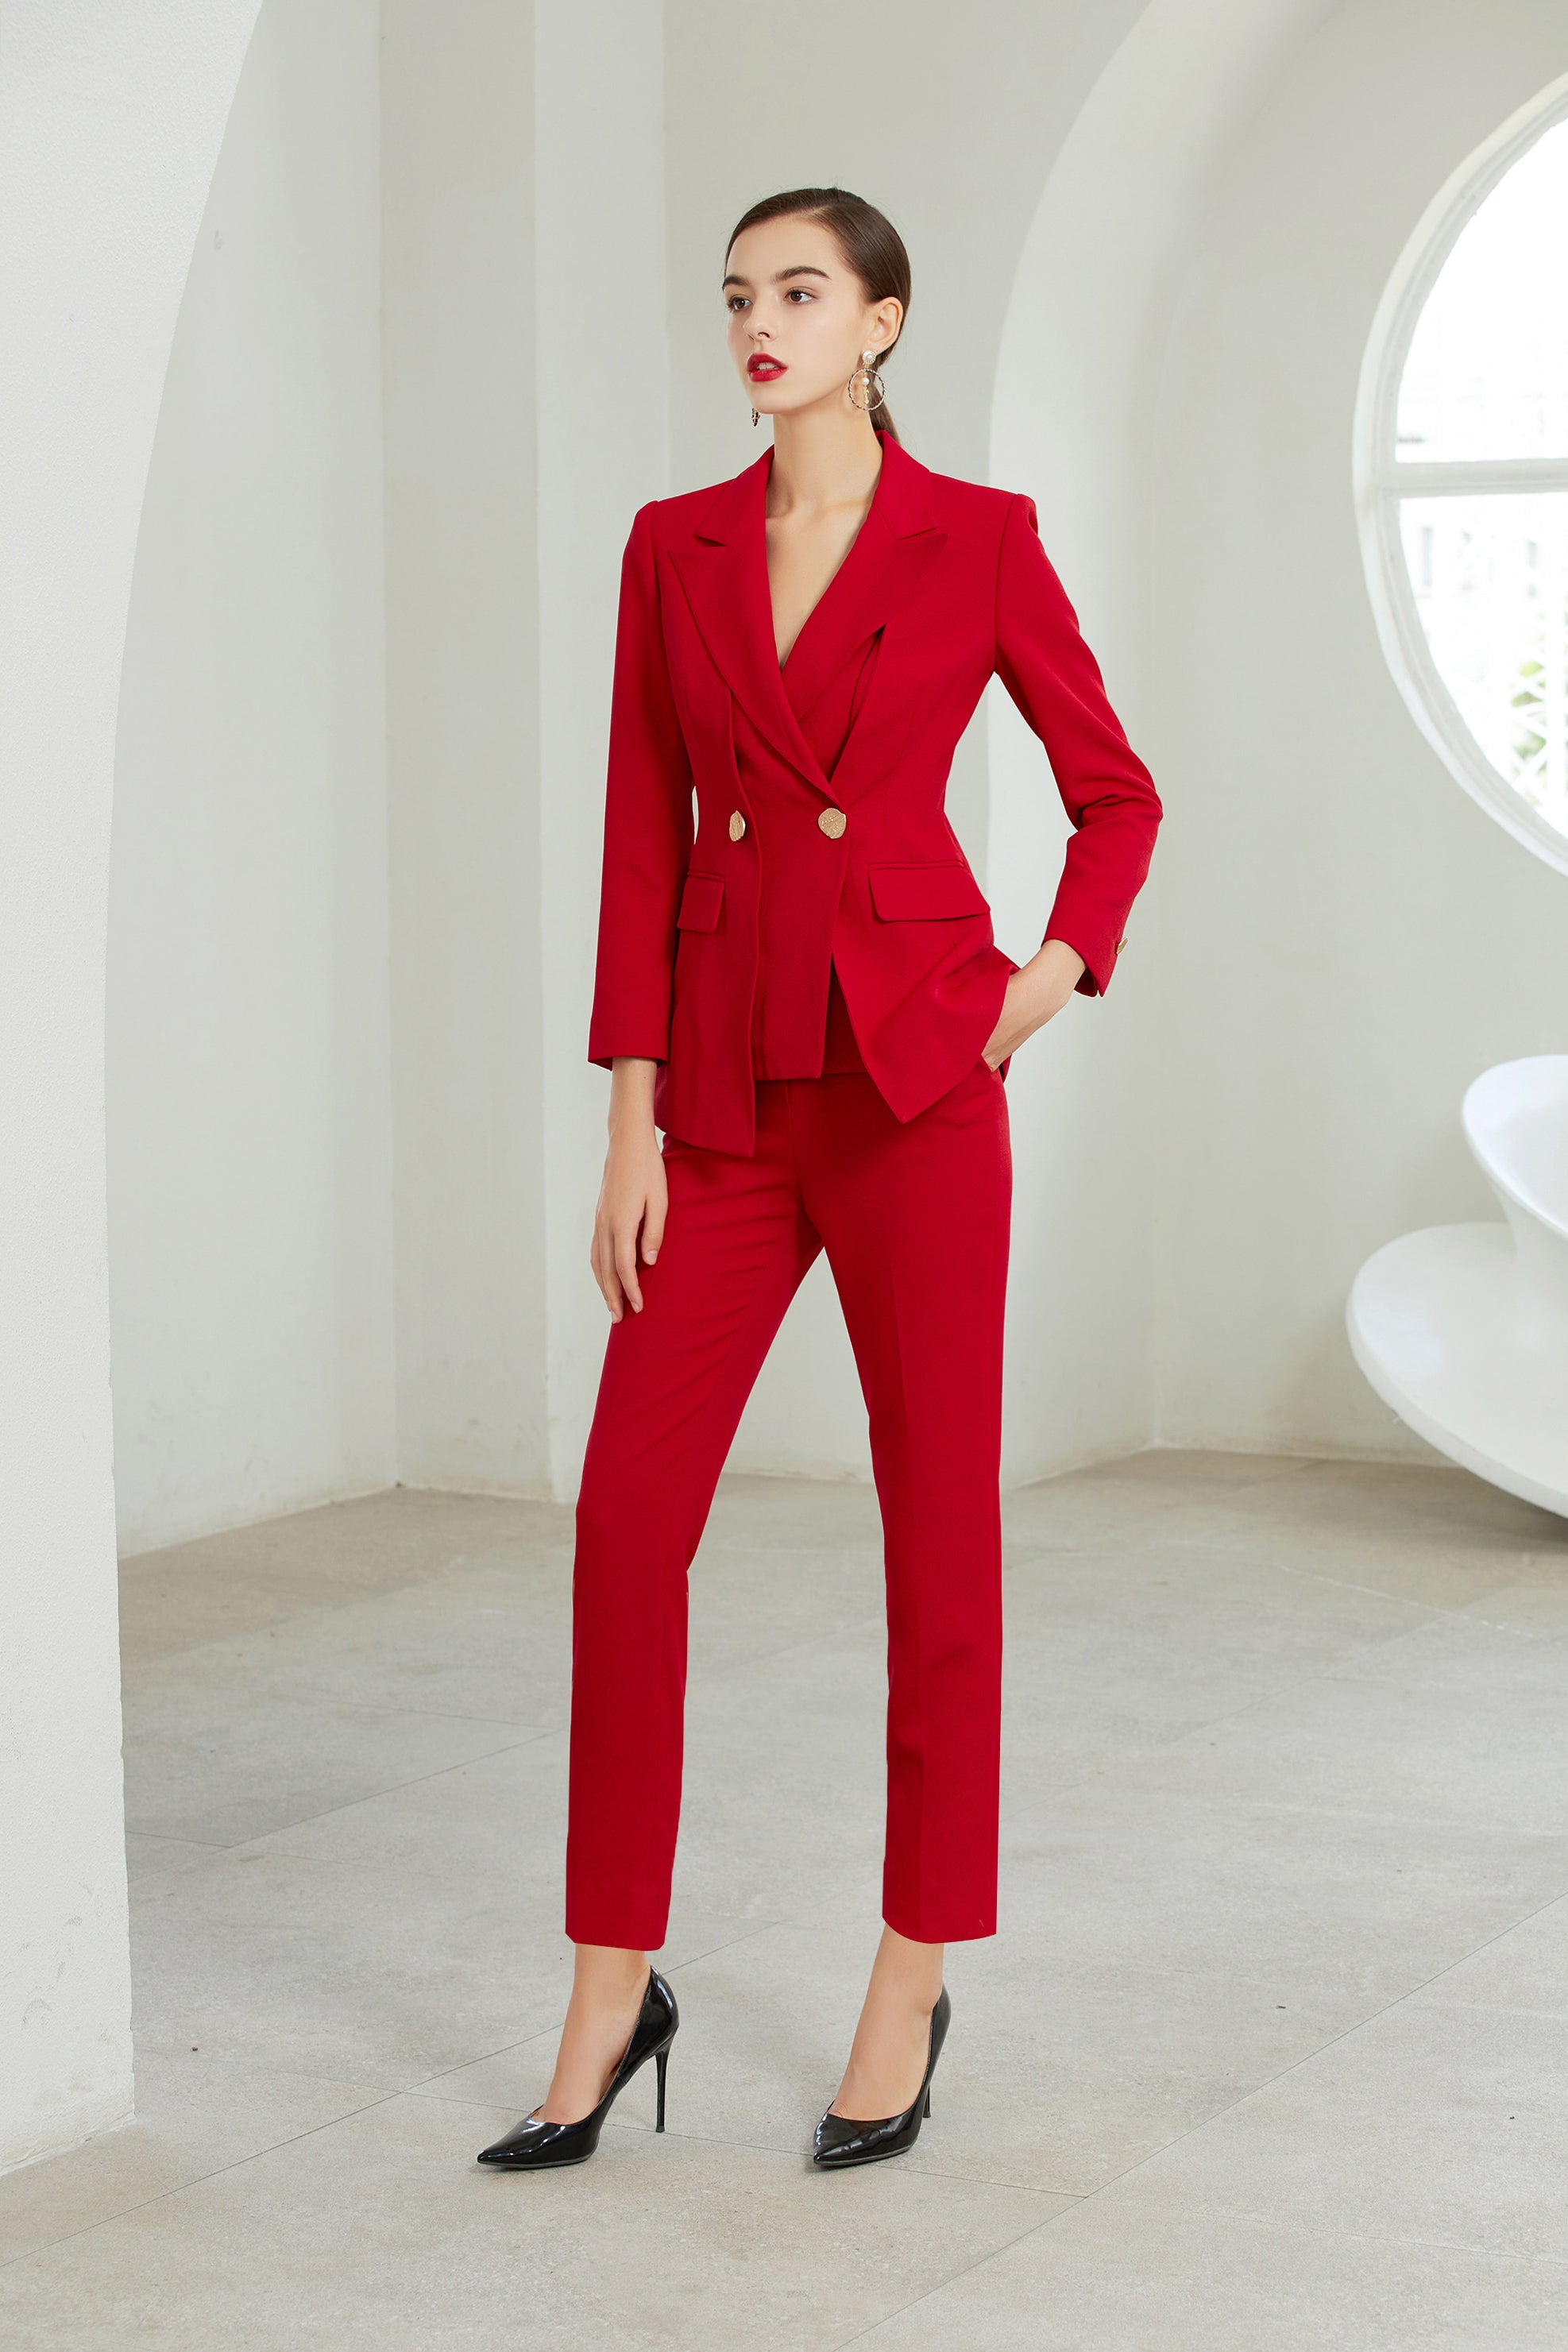 Red Three Button Assymmetric Pantsuit - FashionByTeresa